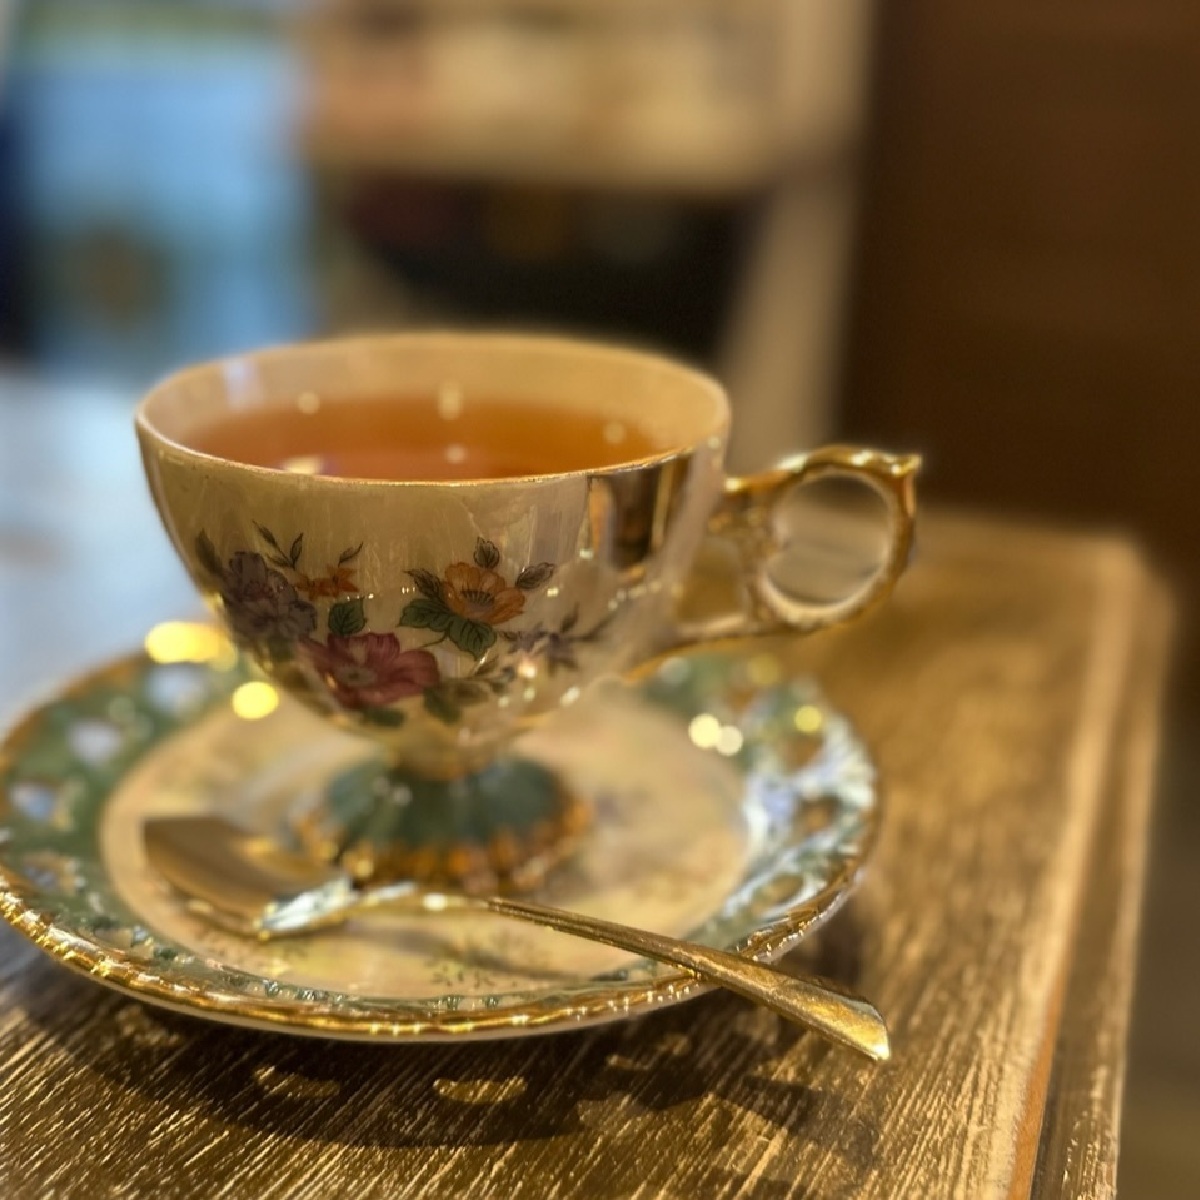 紅茶王子のいる本格的こだわり紅茶専門店「Tea room...7」@北与野